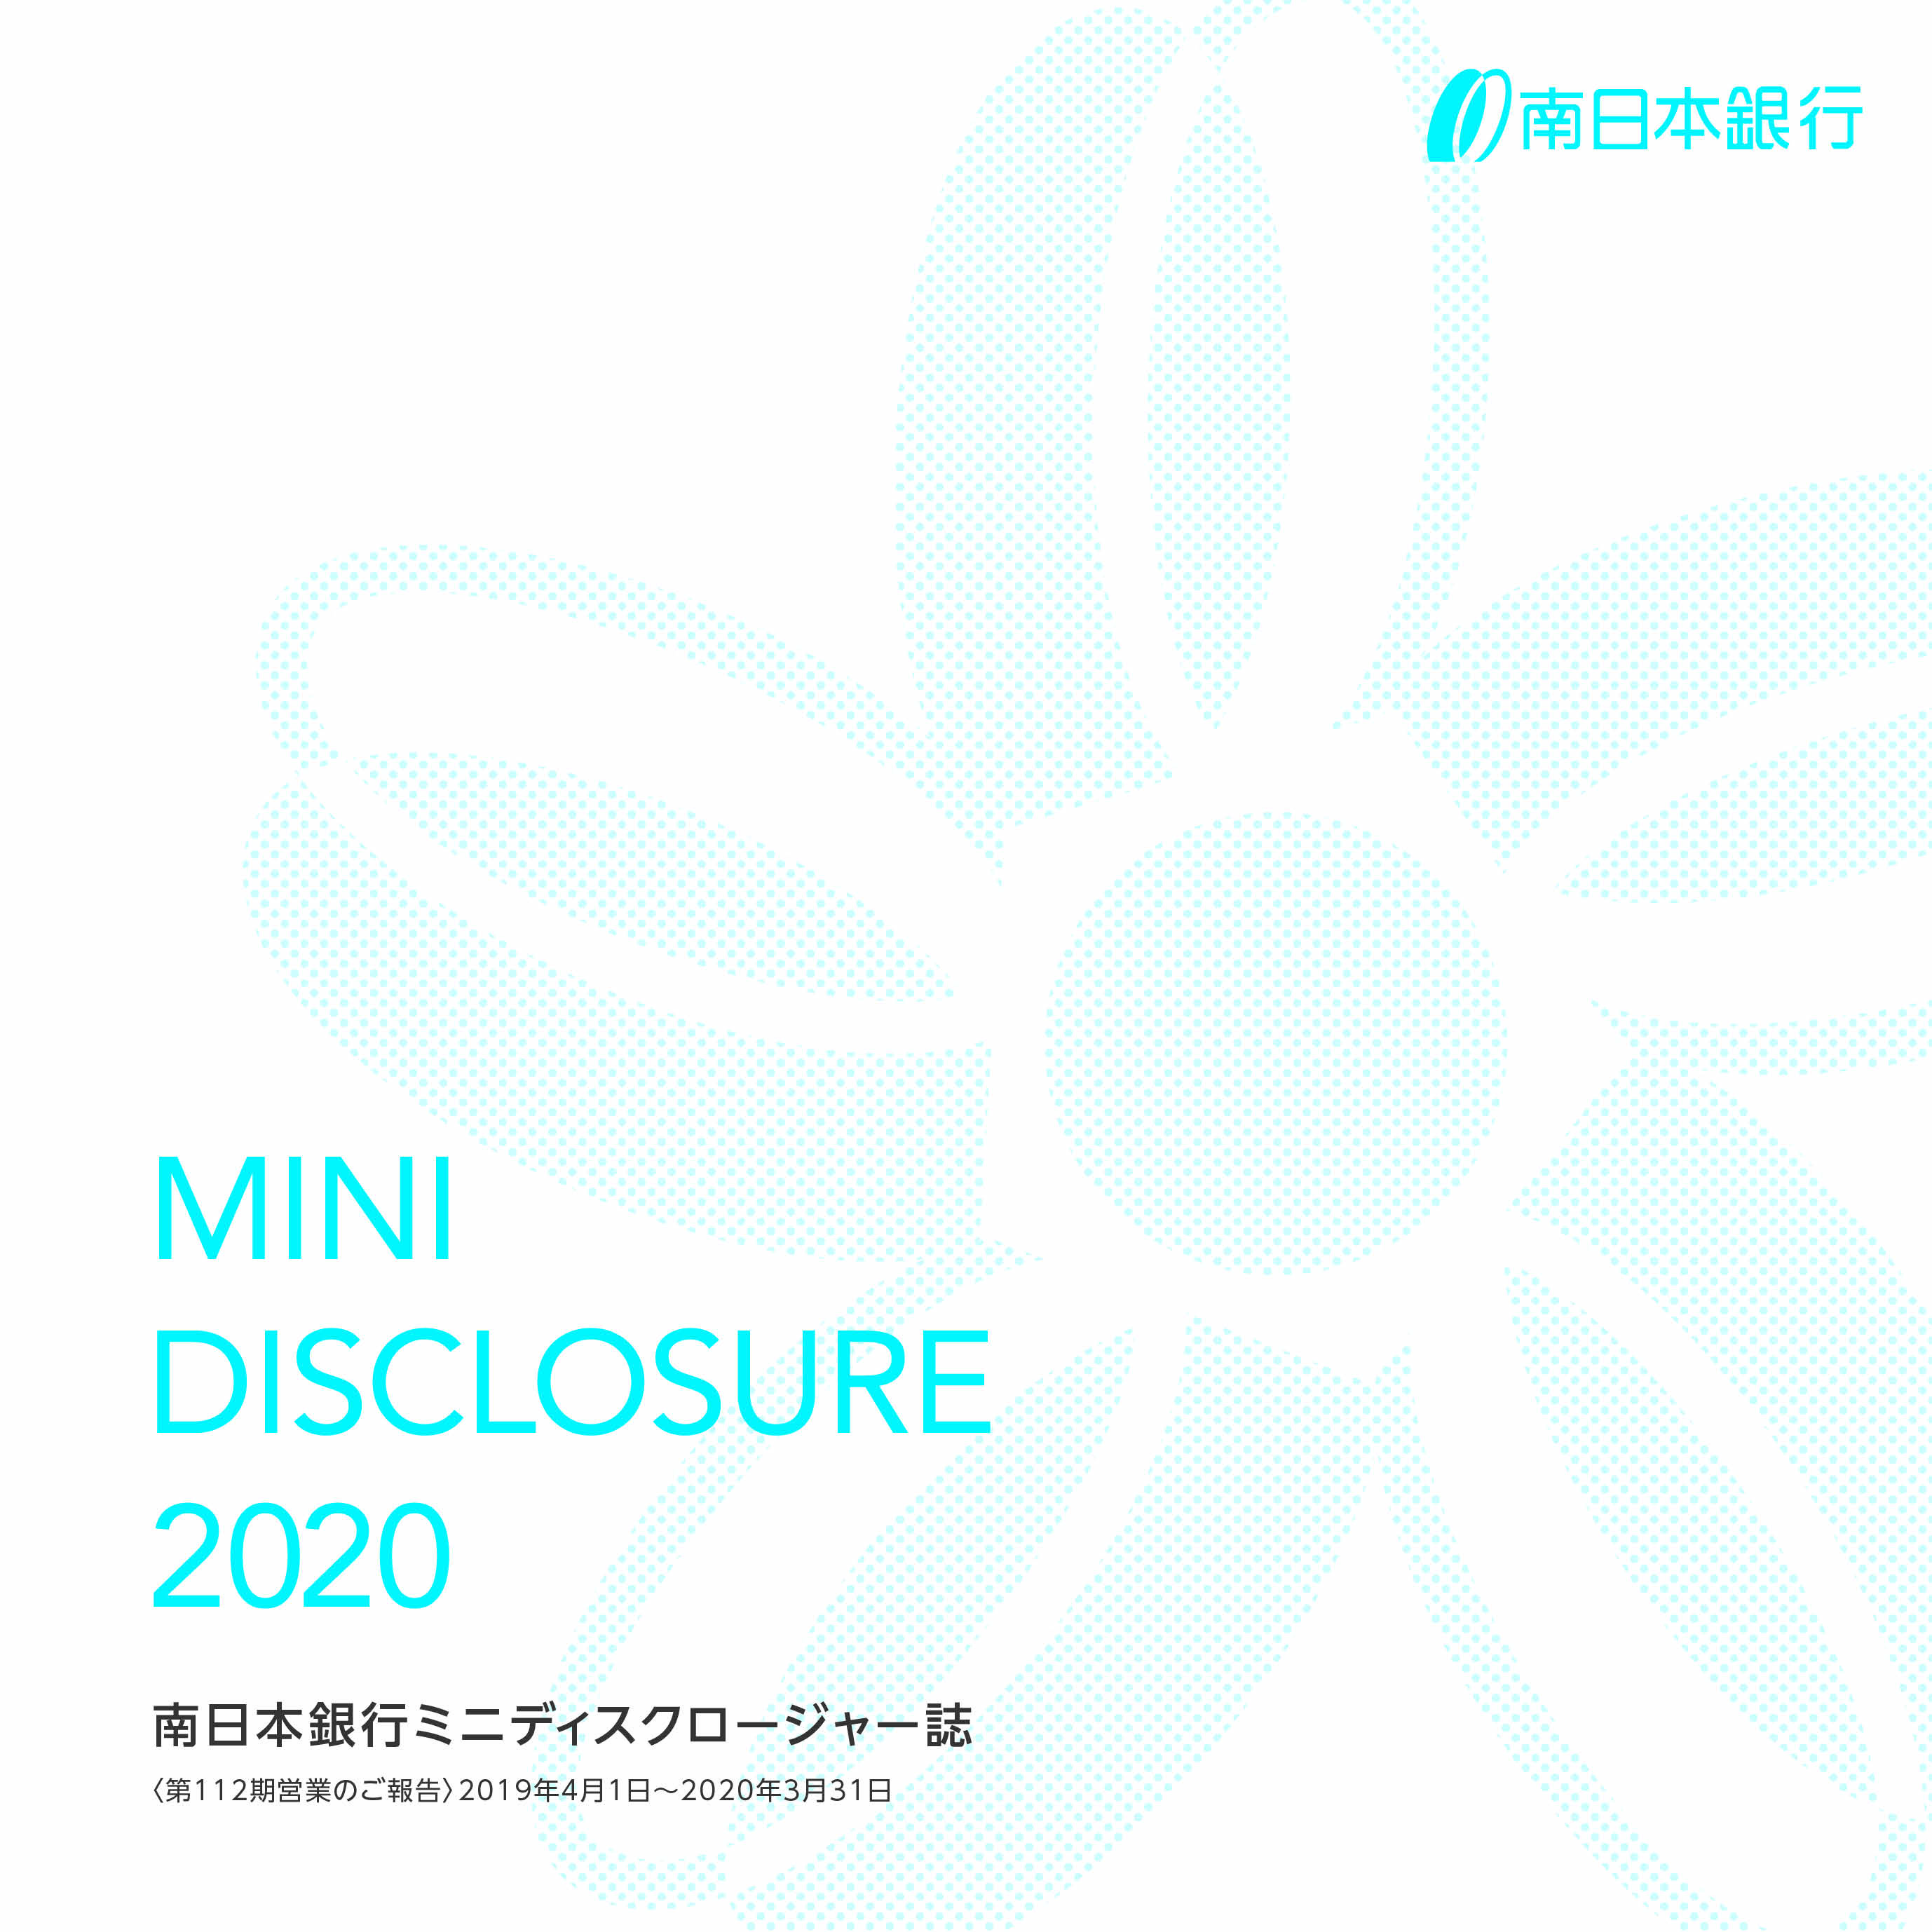 2020_MD_jp_h1.jpg